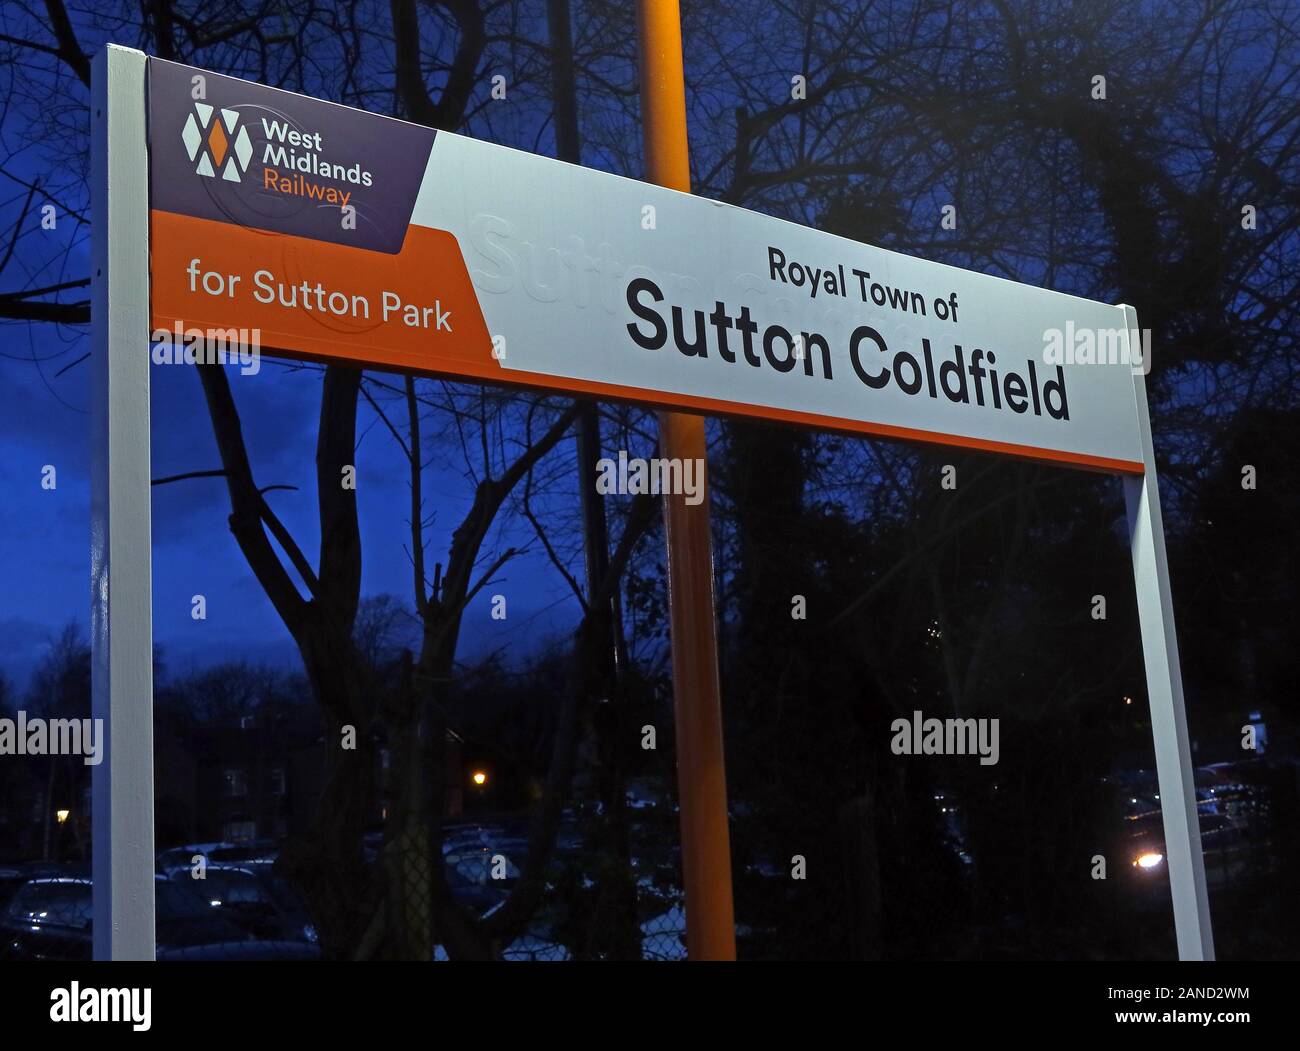 Città Reale di Sutton Coldfield segno sulla stazione, West Midlands ferroviarie, Birmingham, Inghilterra, Regno Unito Foto Stock